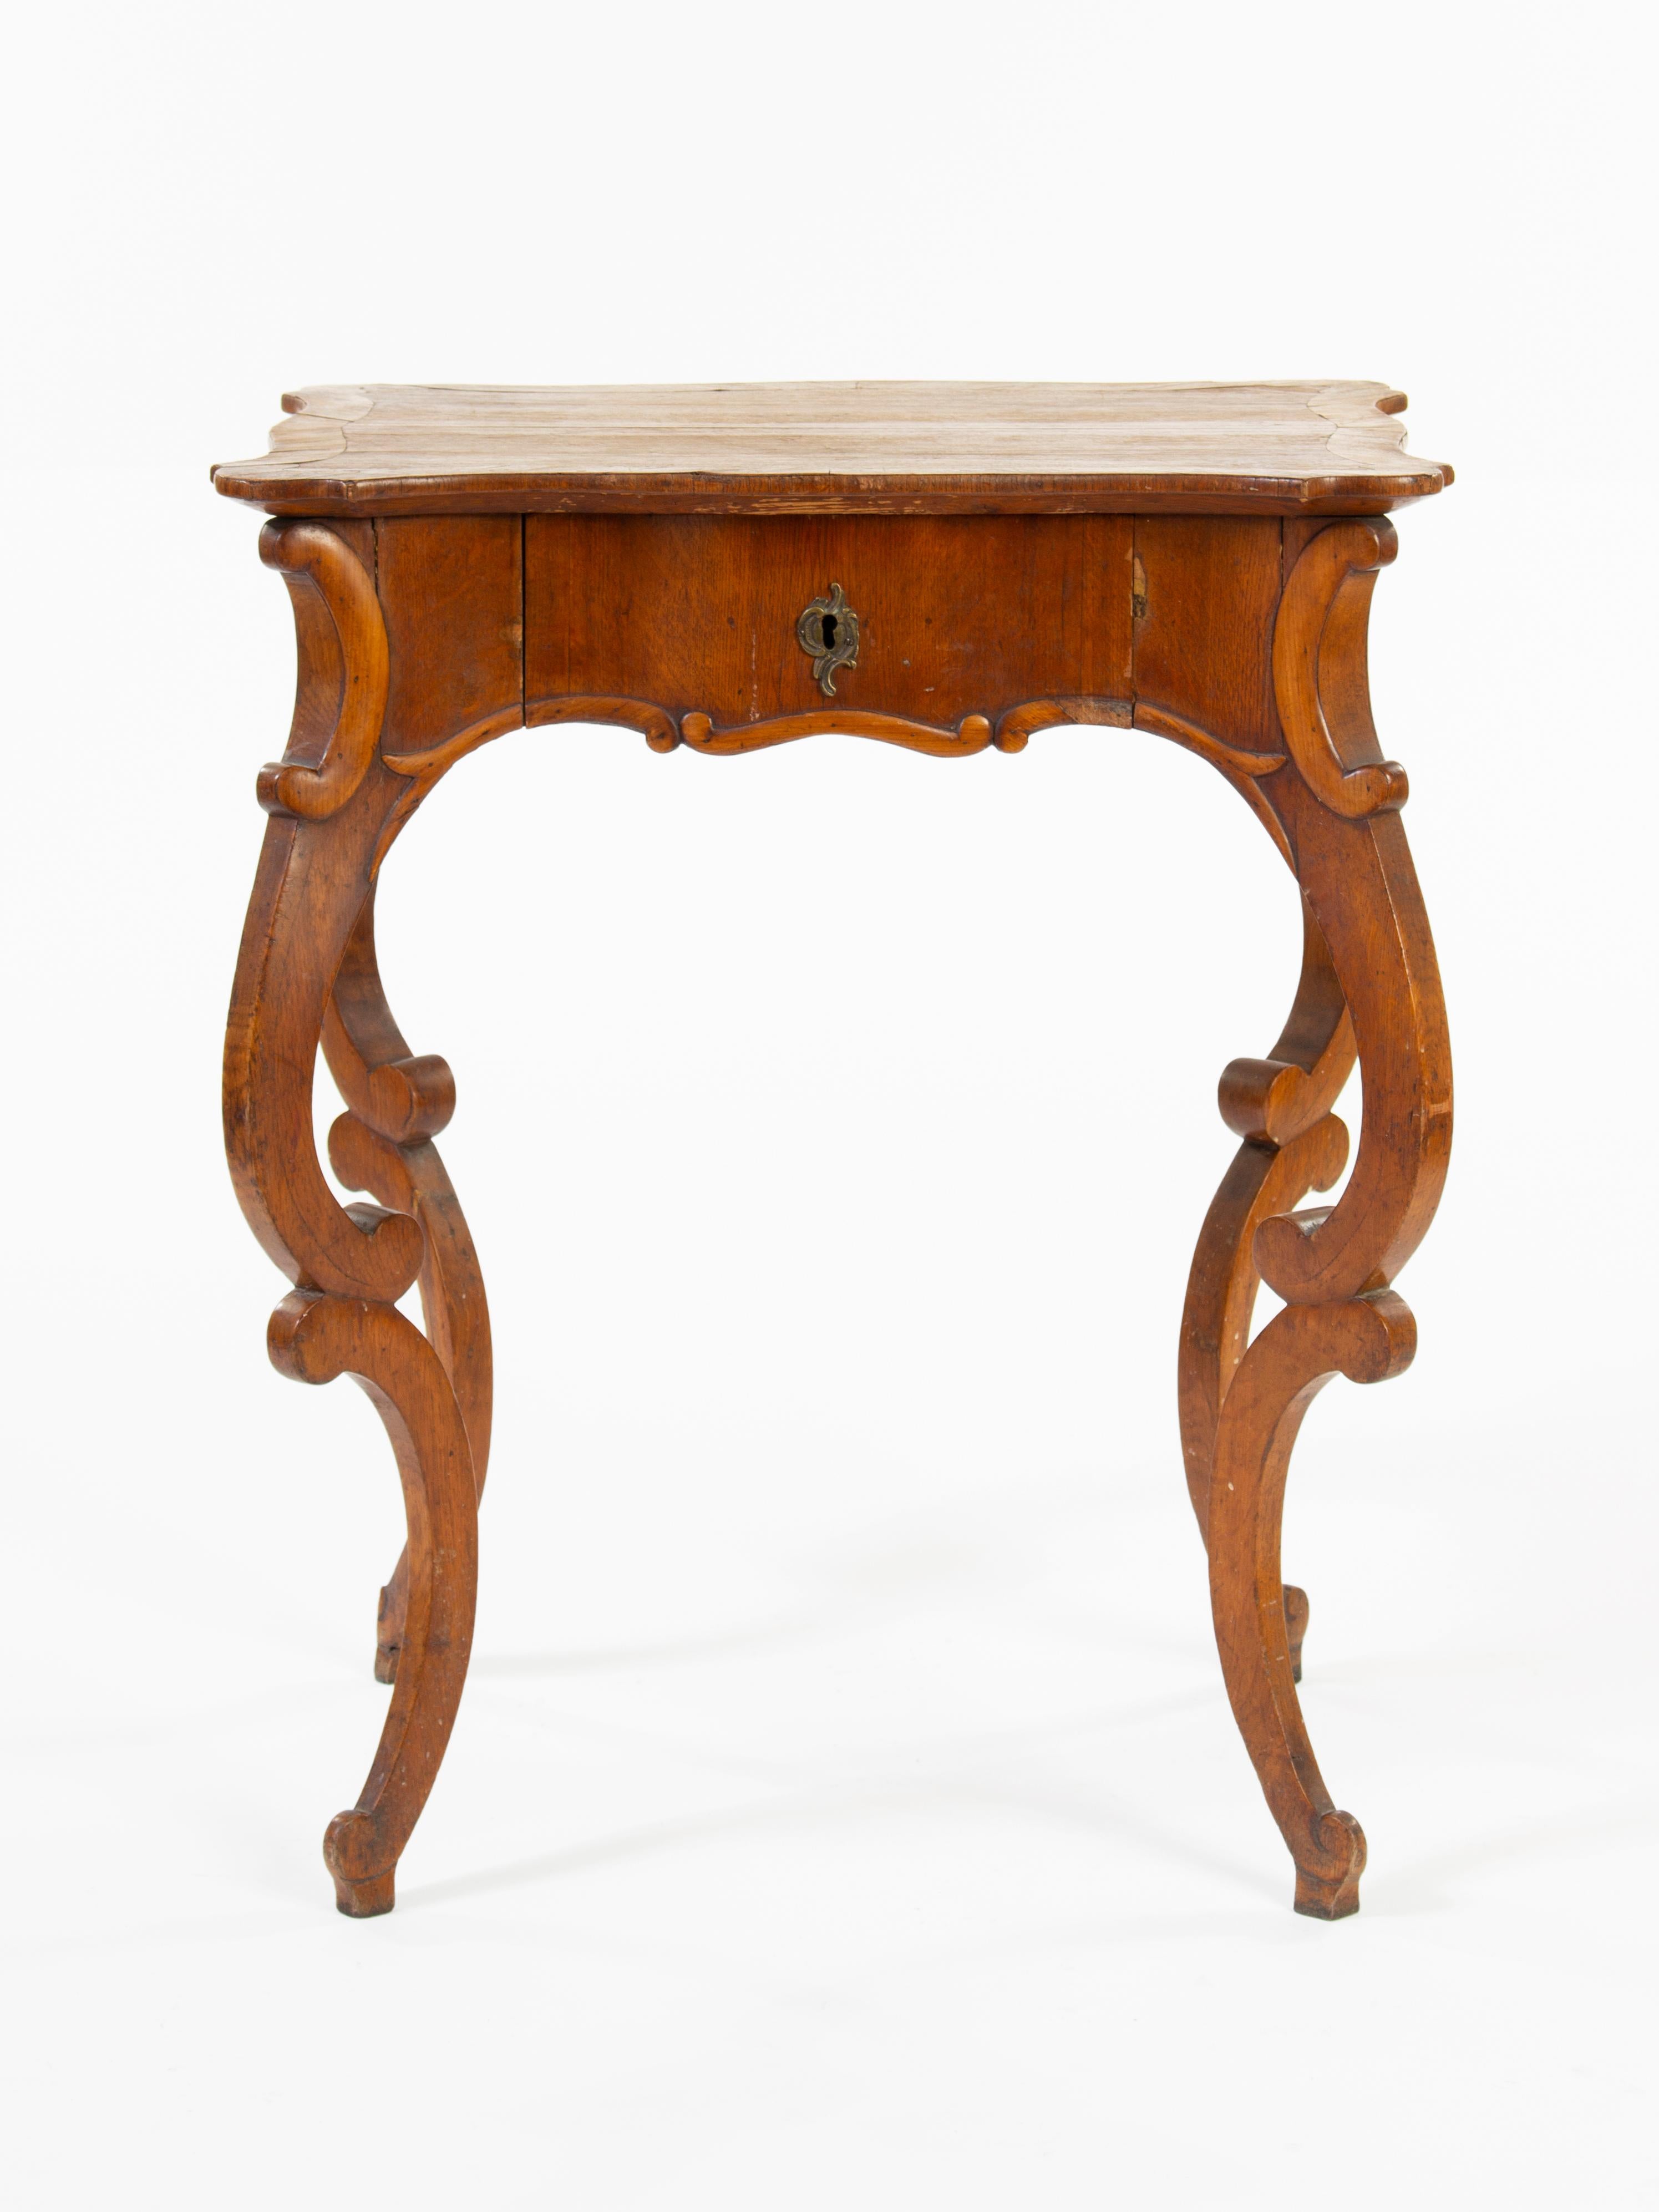 Schreibtisch im Louis-Philippe-Stil im Stil des Rokoko-Revivals, um 1870.
Kiefer, Nussbaumfurnier.